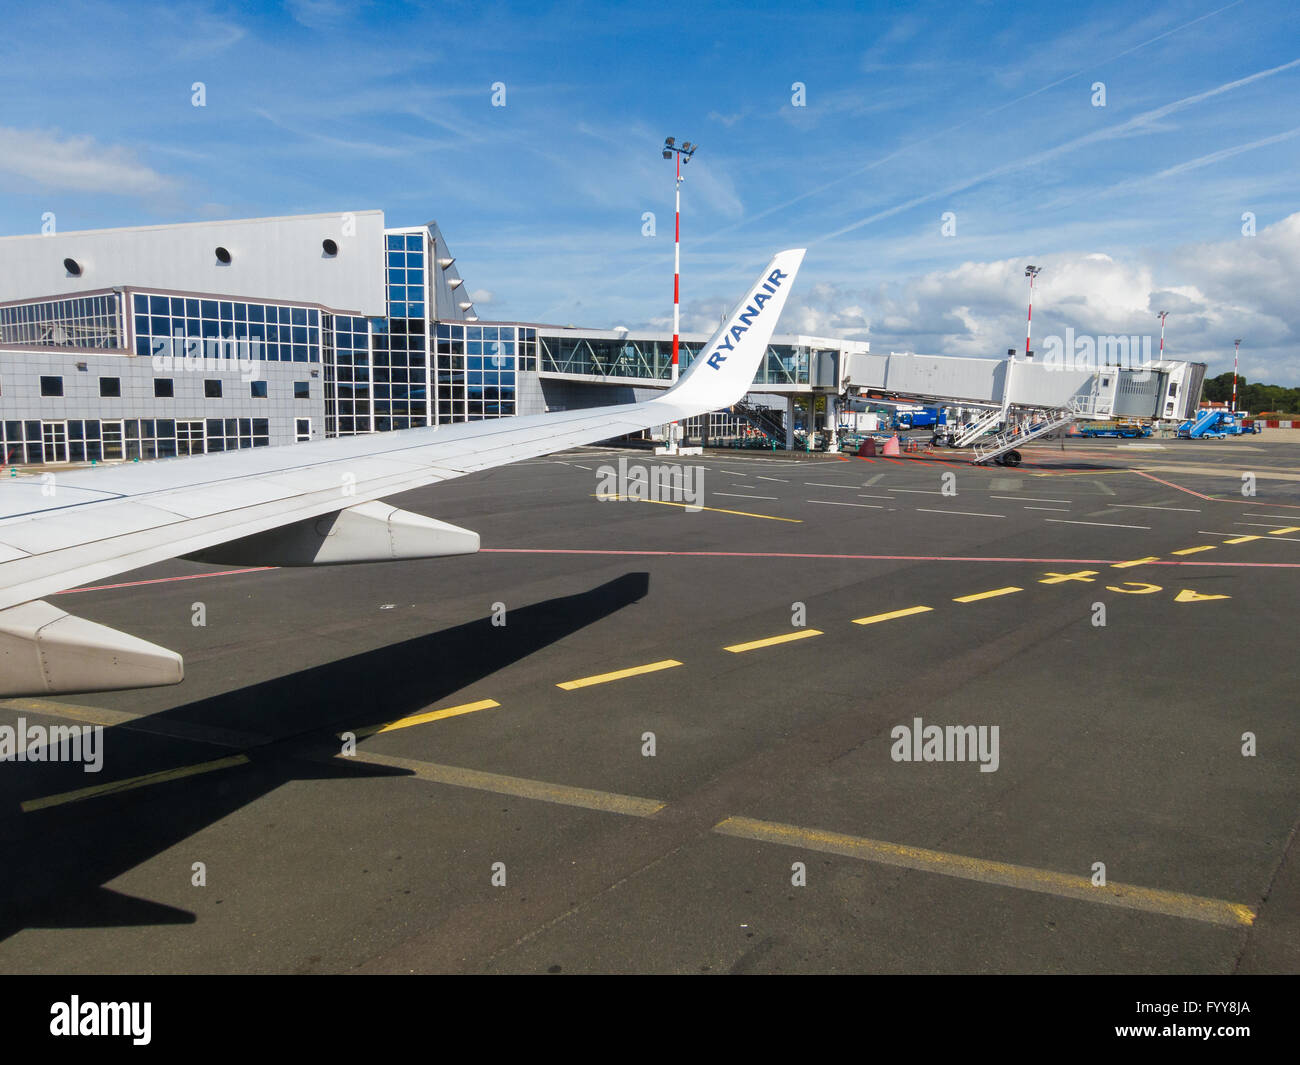 Ryanair-Flugzeug am Flughafen von Biarritz Anglet-Bayonne, Frankreich Stockfoto